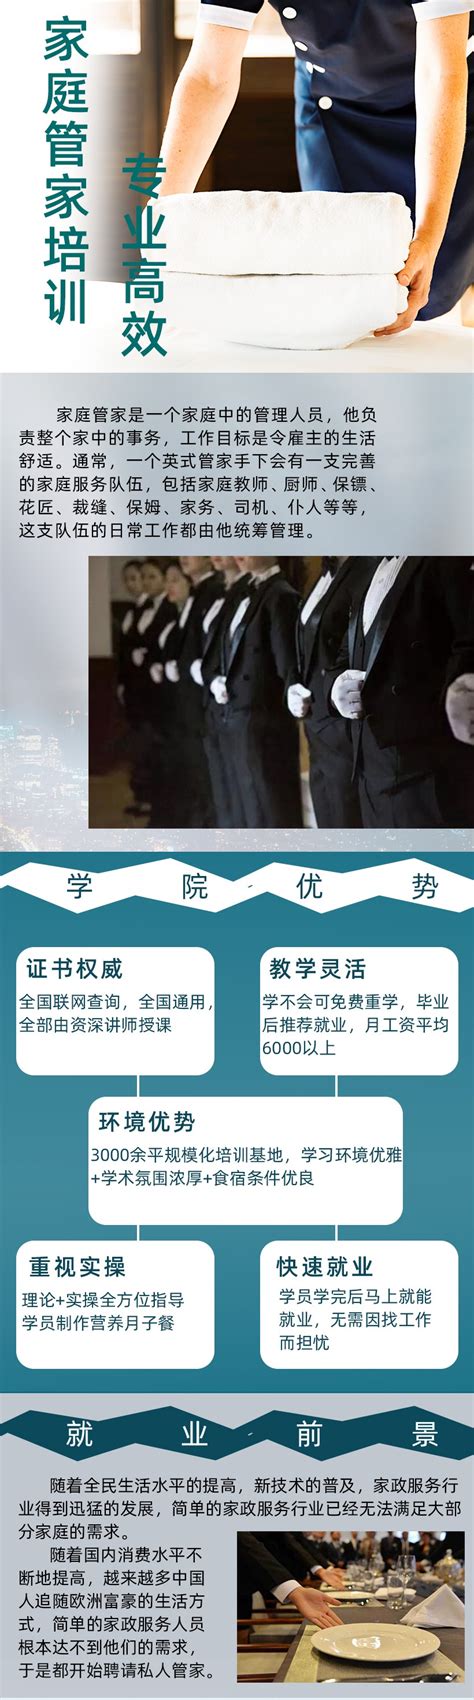 上海教育微信：国内首创~上海杉达学院开设“国际管家课程”